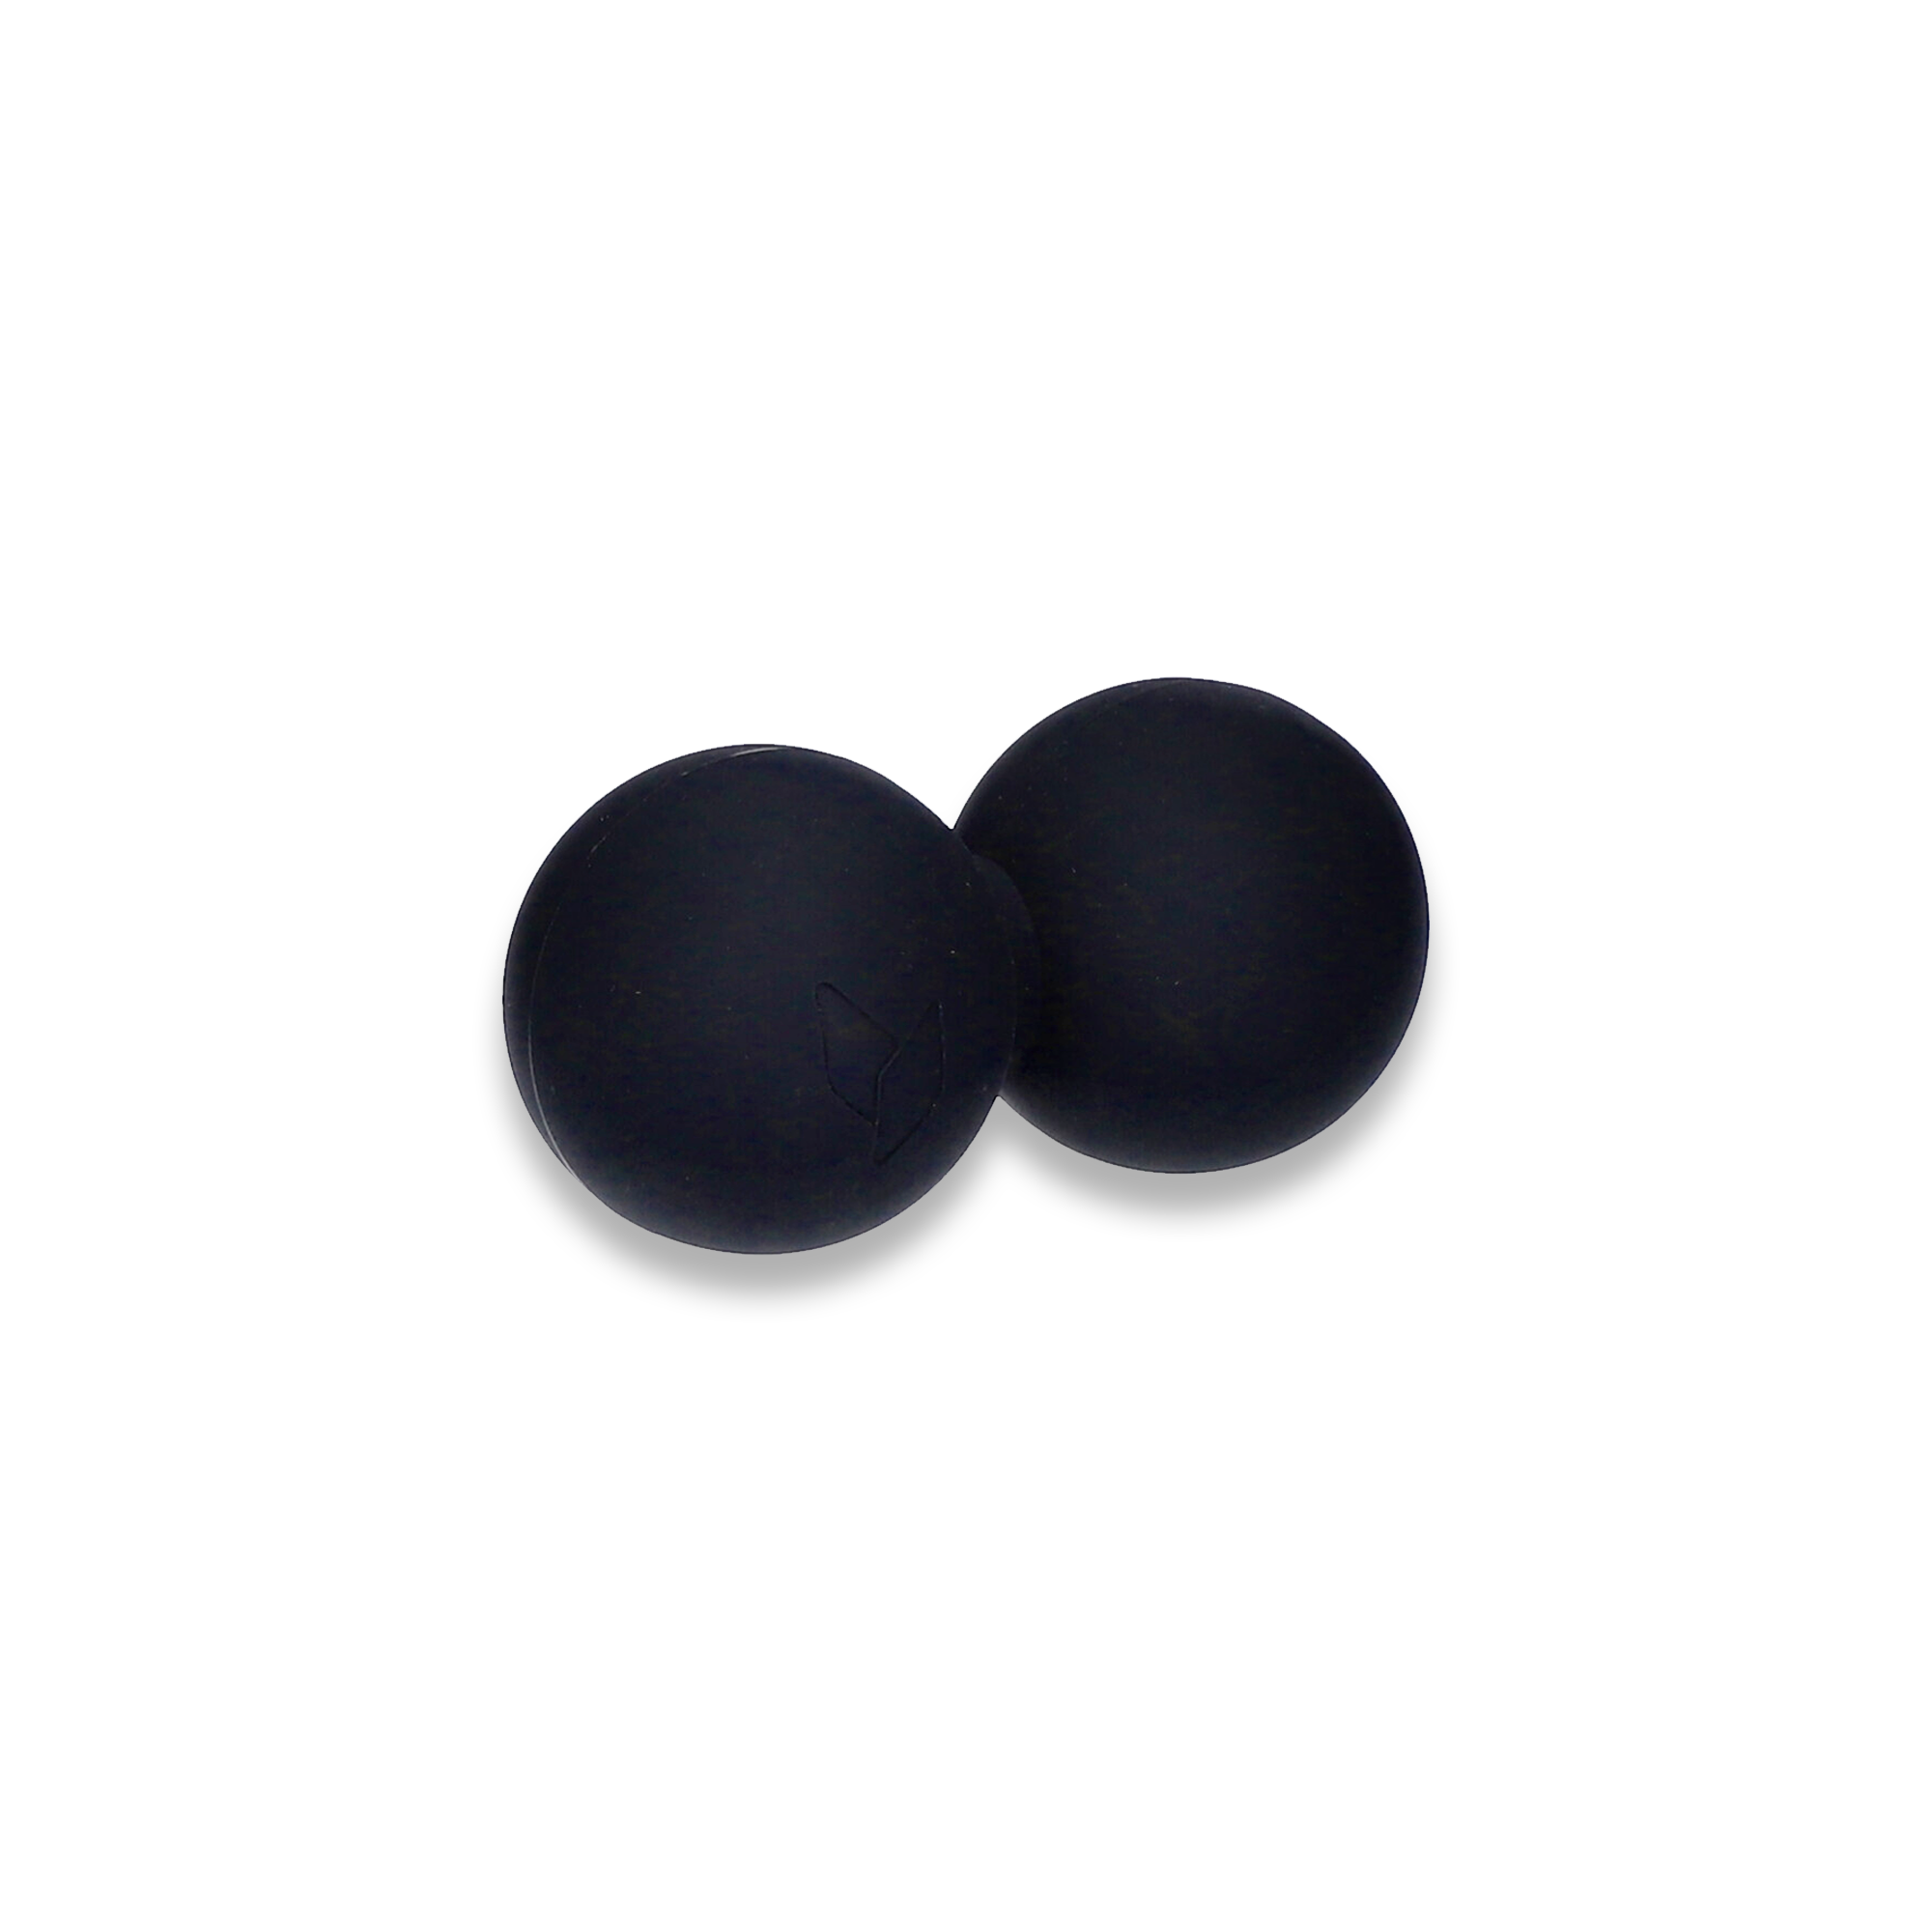 yellowMASSAGE DuoBall podwójna piłeczka do masażu, silikon, czarny 6,5cm